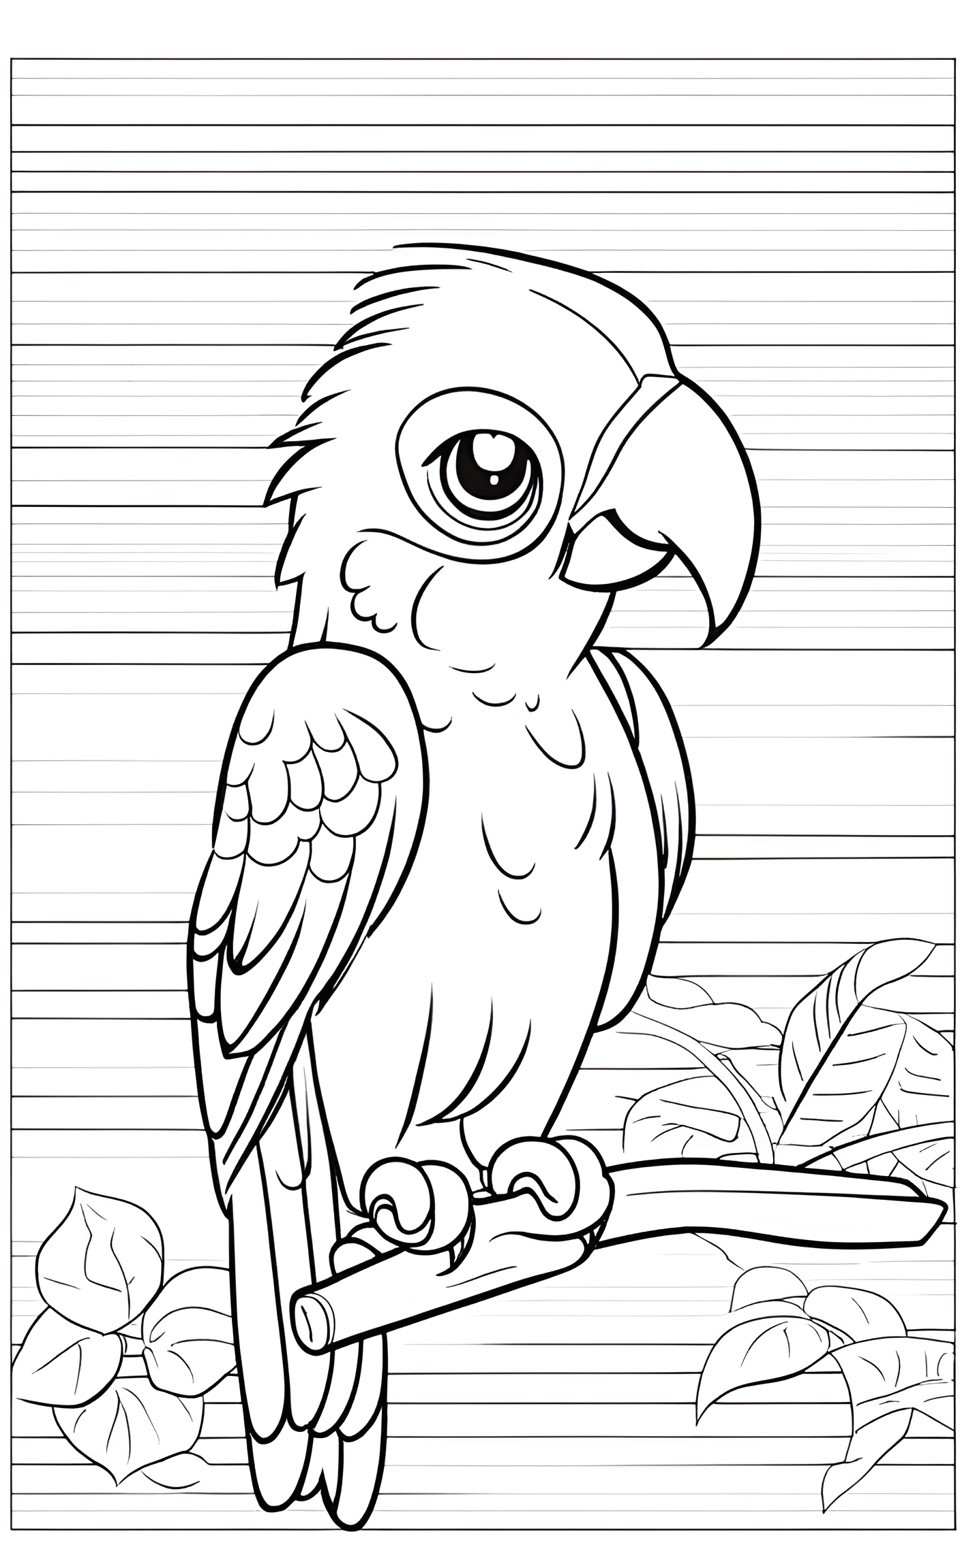 Beğenebileceğiniz 12 Papağan Boyama Sayfası | 20 Parrot Coloring Pages You May Like